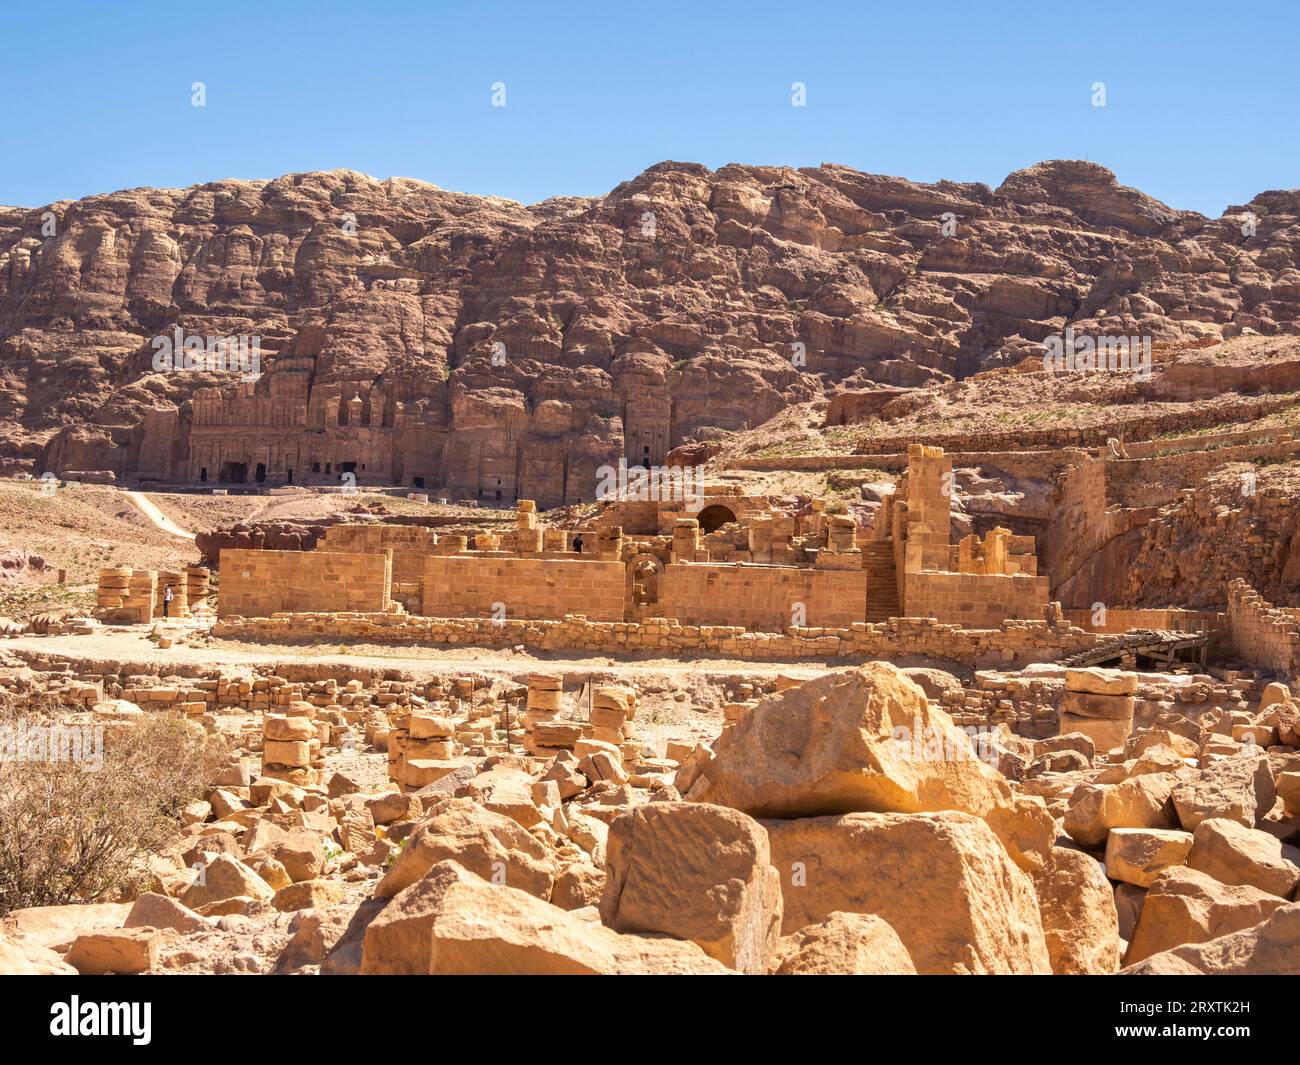 La chiesa bizantina, il parco archeologico di Petra, patrimonio dell'umanità dell'UNESCO, una delle nuove sette meraviglie del mondo, Petra, Giordania, Medio Oriente Foto Stock